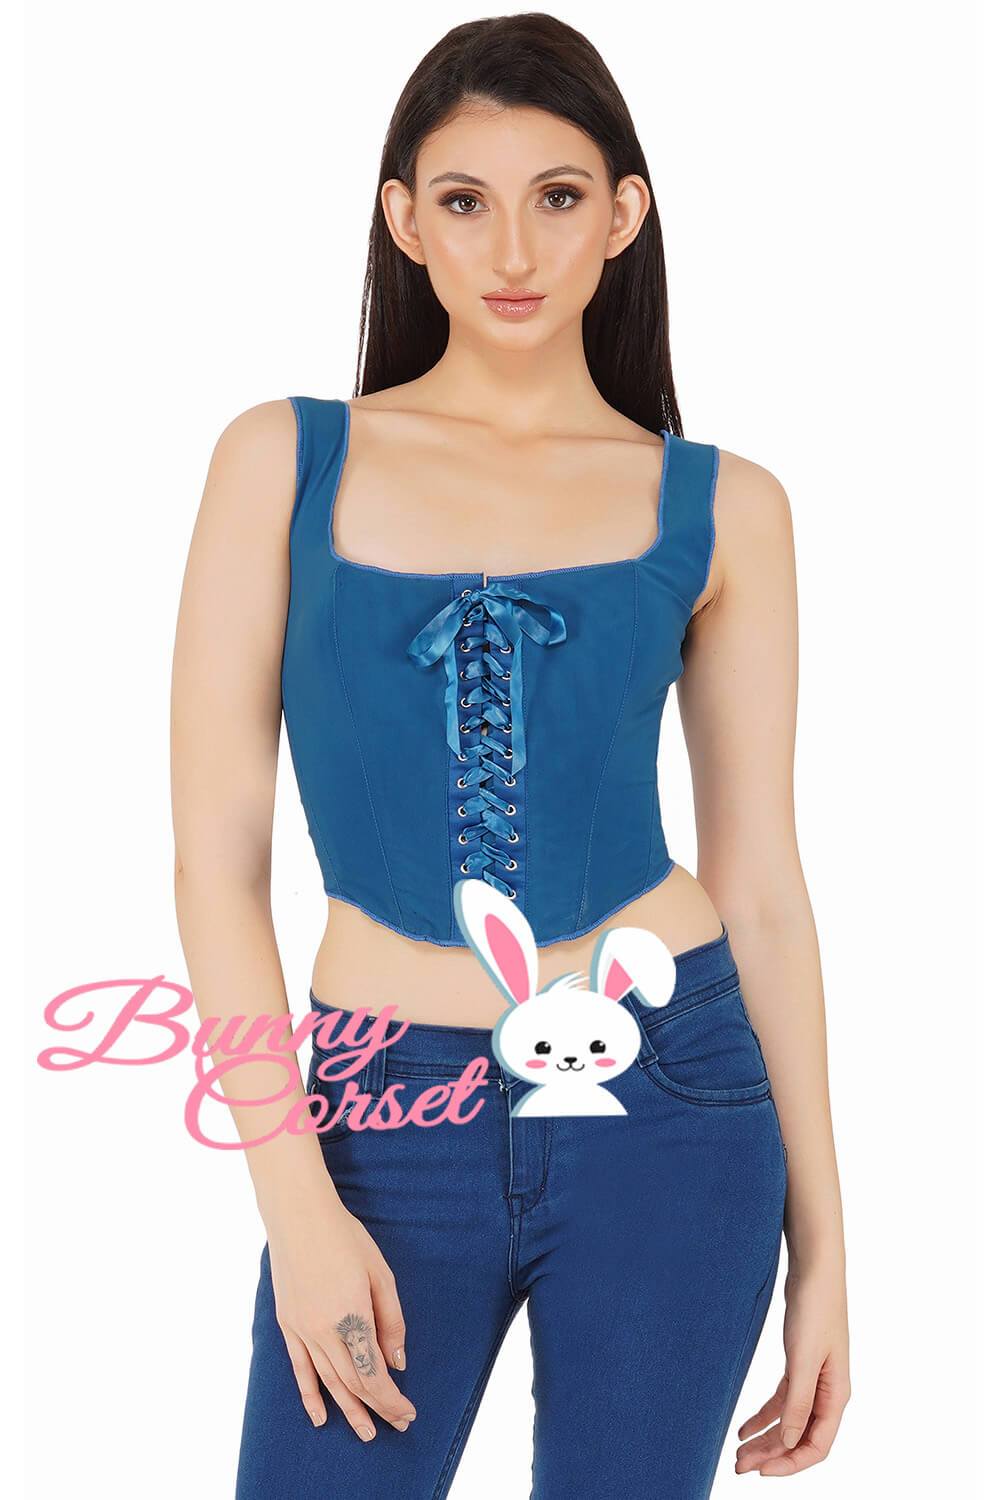 https://www.corsetdeal.com/cdn/shop/products/BC-1655_F_bunny_corset_power_shoft_mesh_corset_corset_top_5db326cb-5132-4973-8fbd-a608e75158ae.jpg?v=1635224904